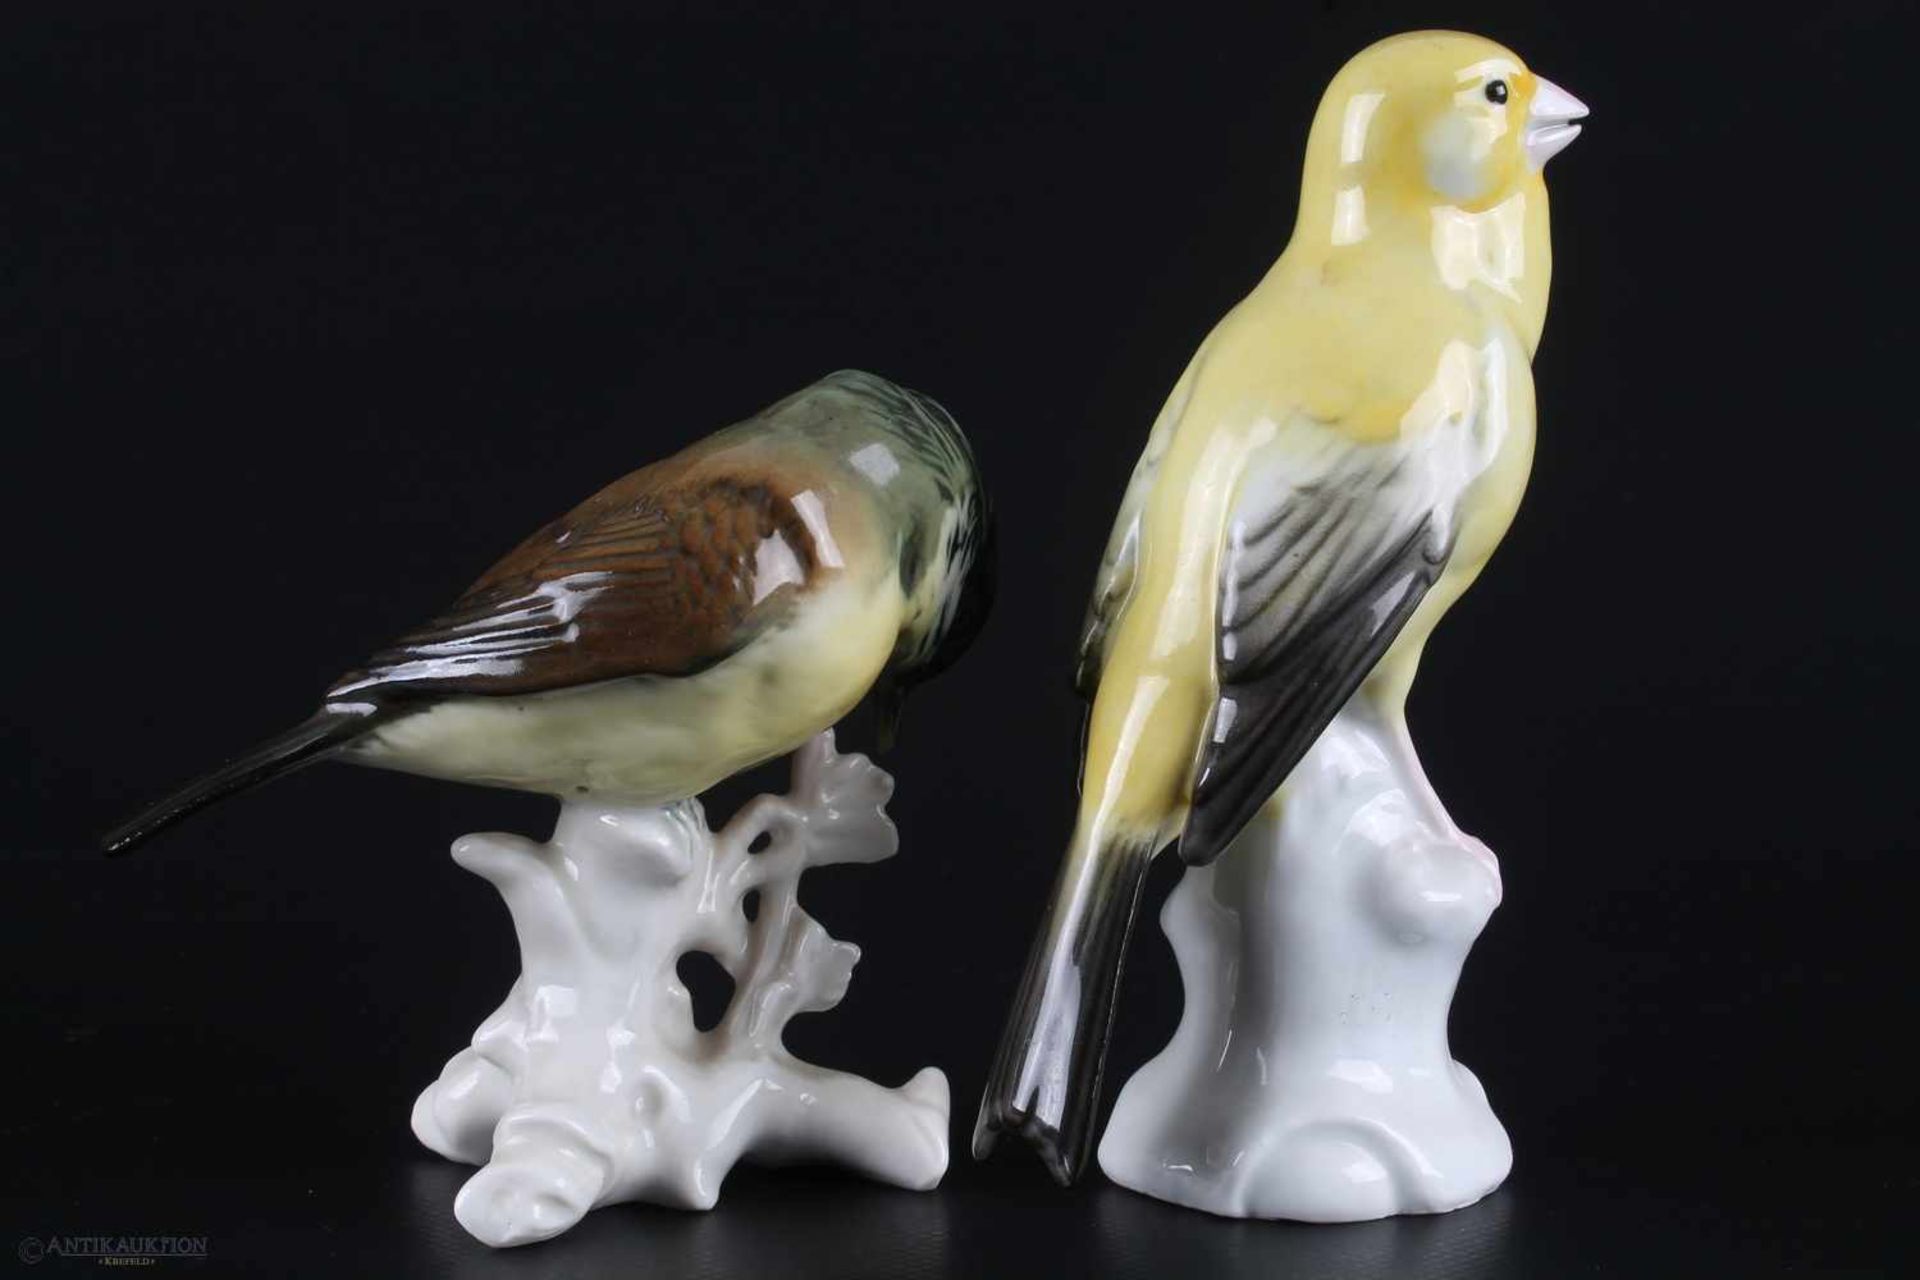 Karl ENS - 2 Vögel Porzellanfiguren,Volkstedt Porzellan, Höhe 13,5 cm und 9 cm, grüne Firmenmarke - Bild 2 aus 3